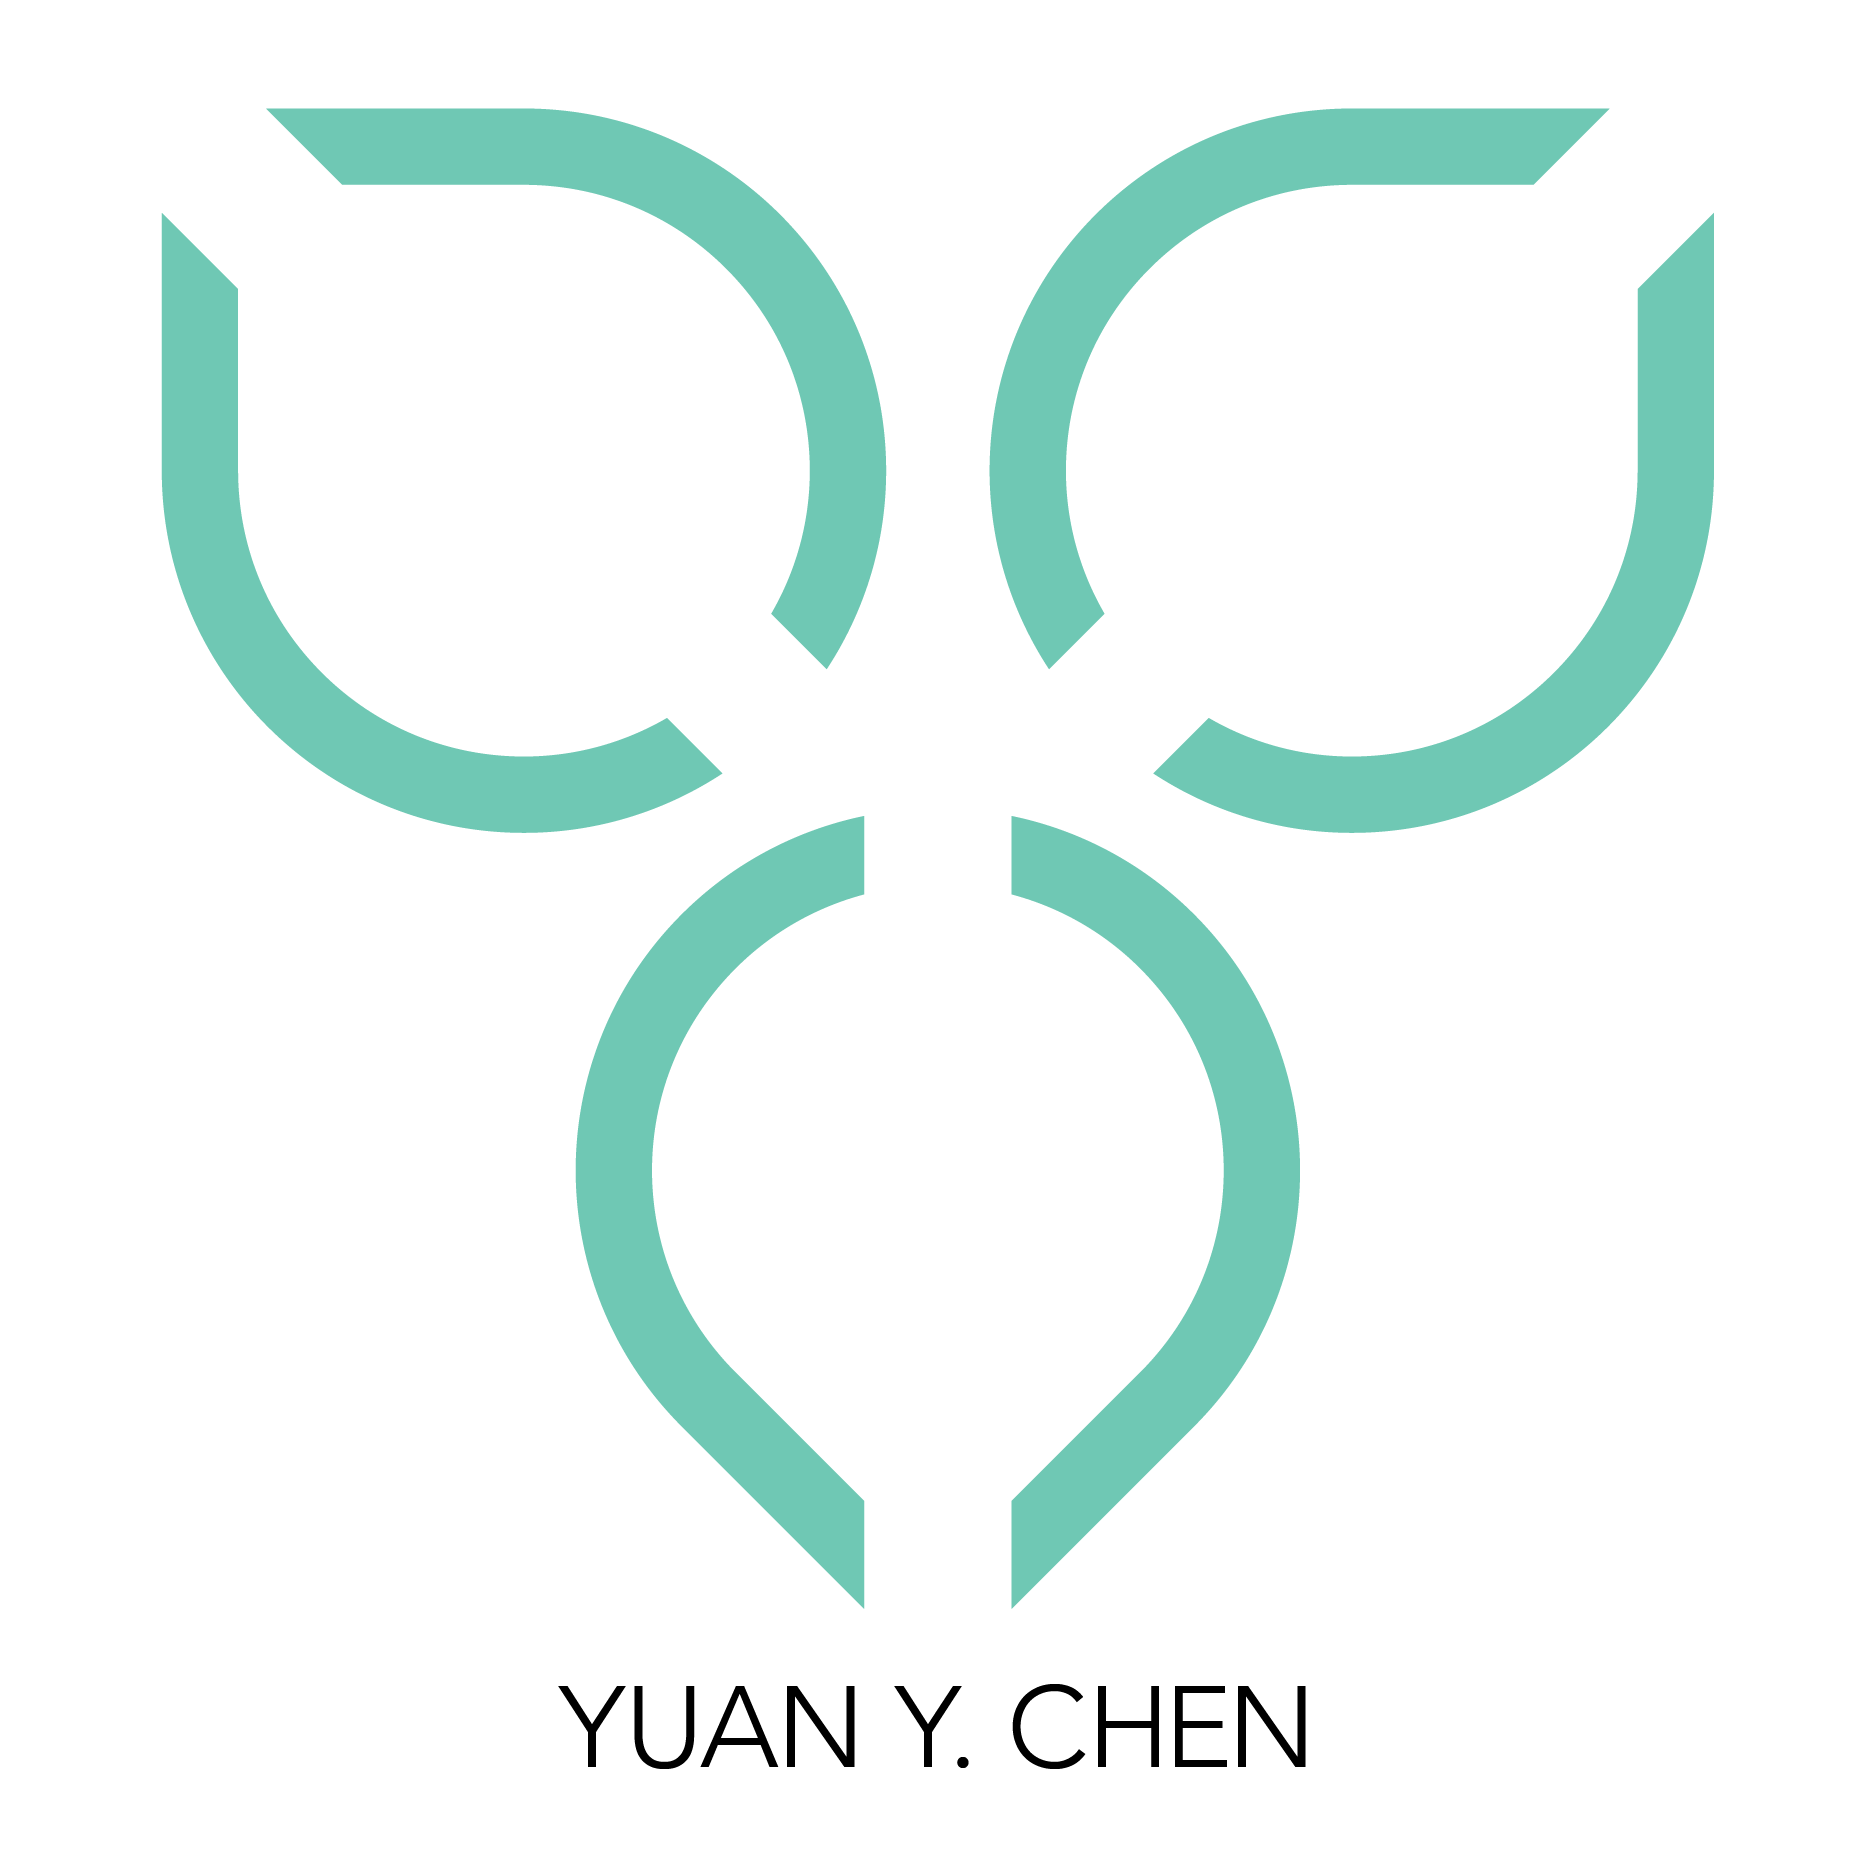 Yuan Chen